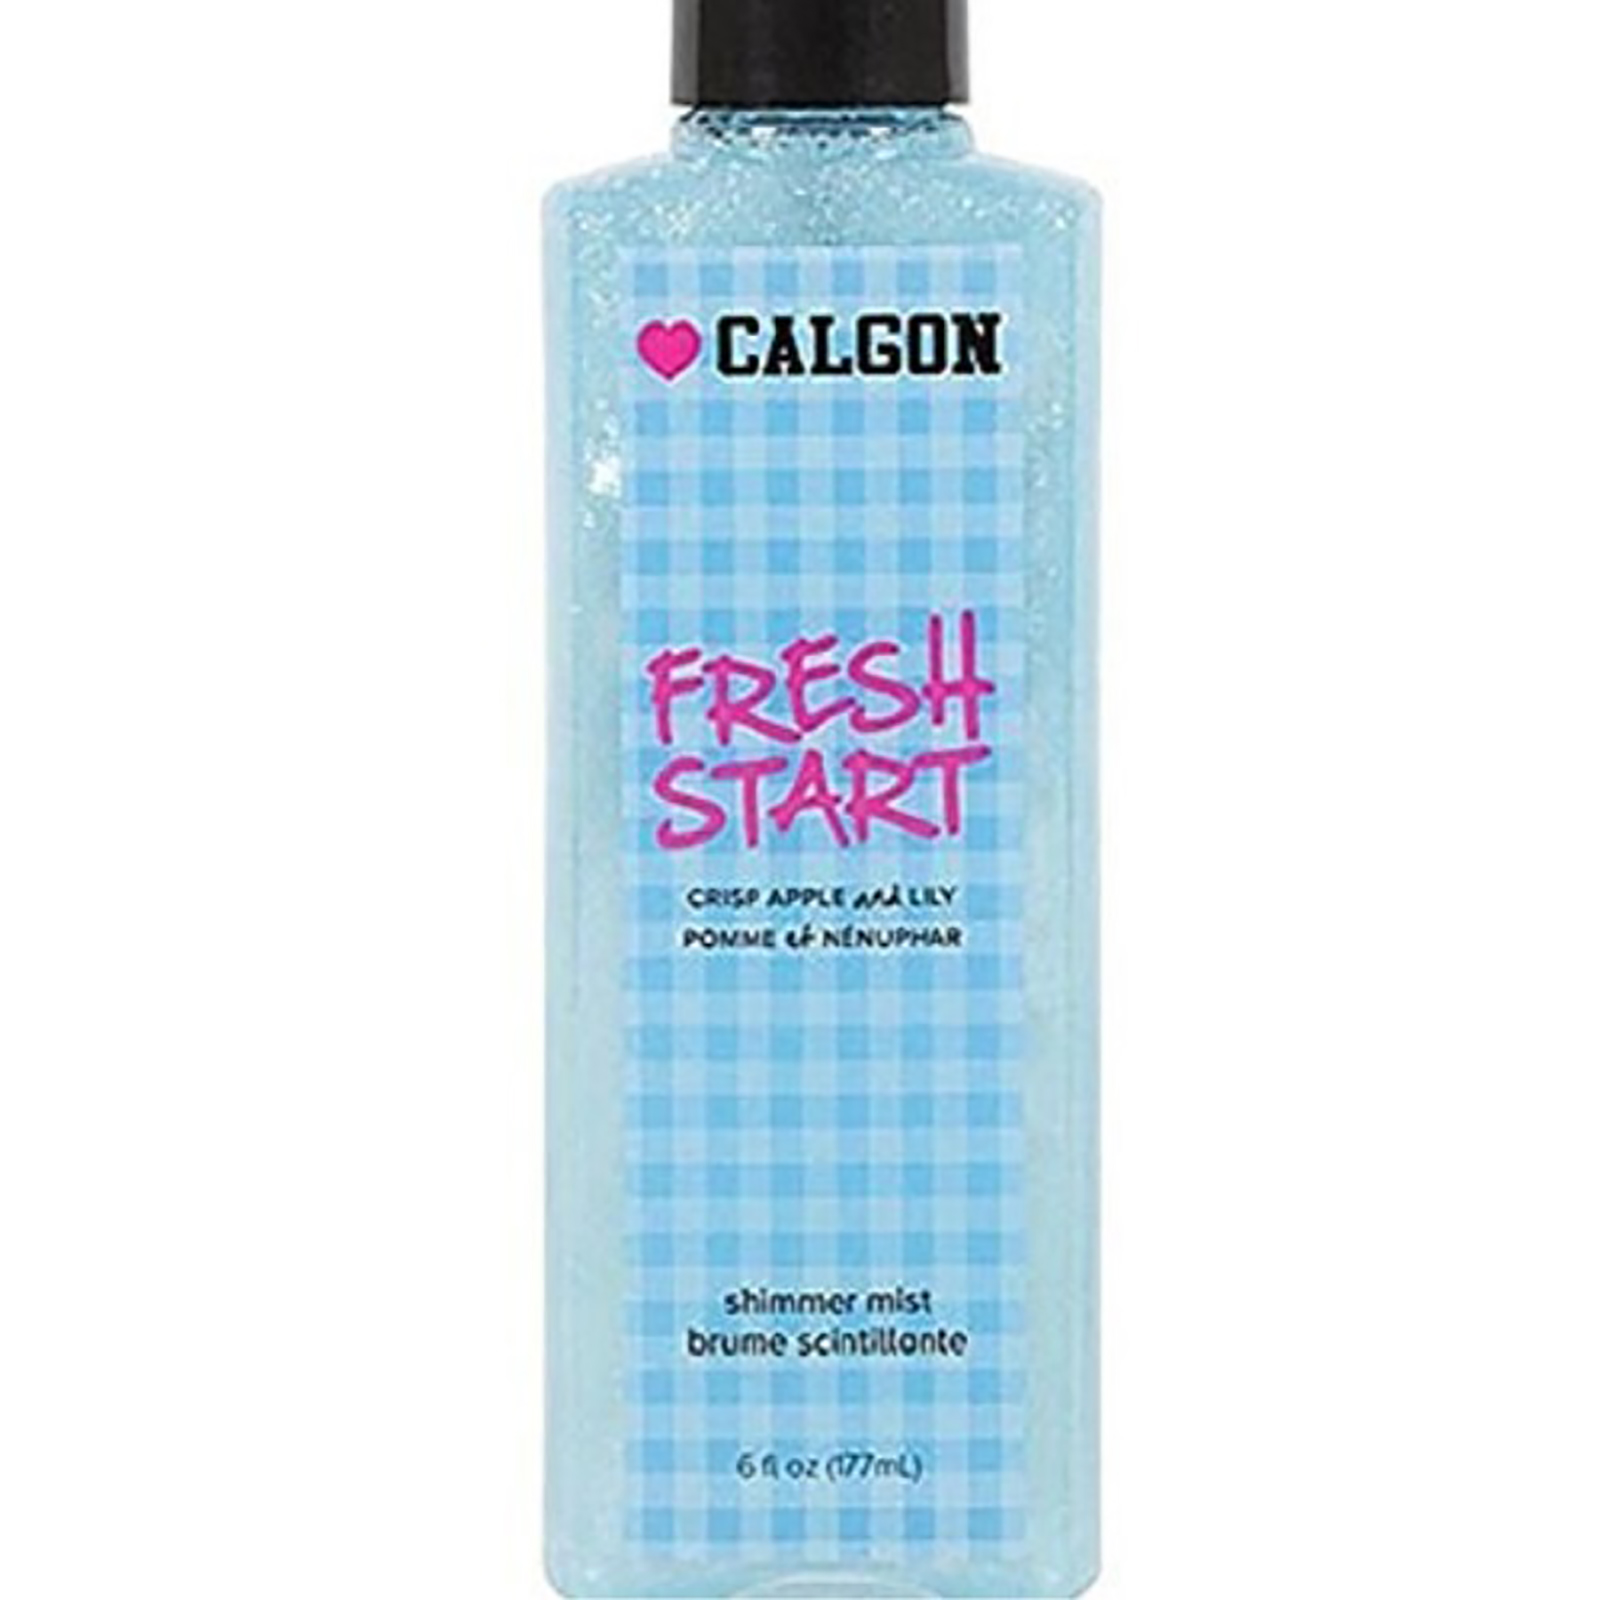 Calgon Fresh Start 6oz. Shimmer Mist